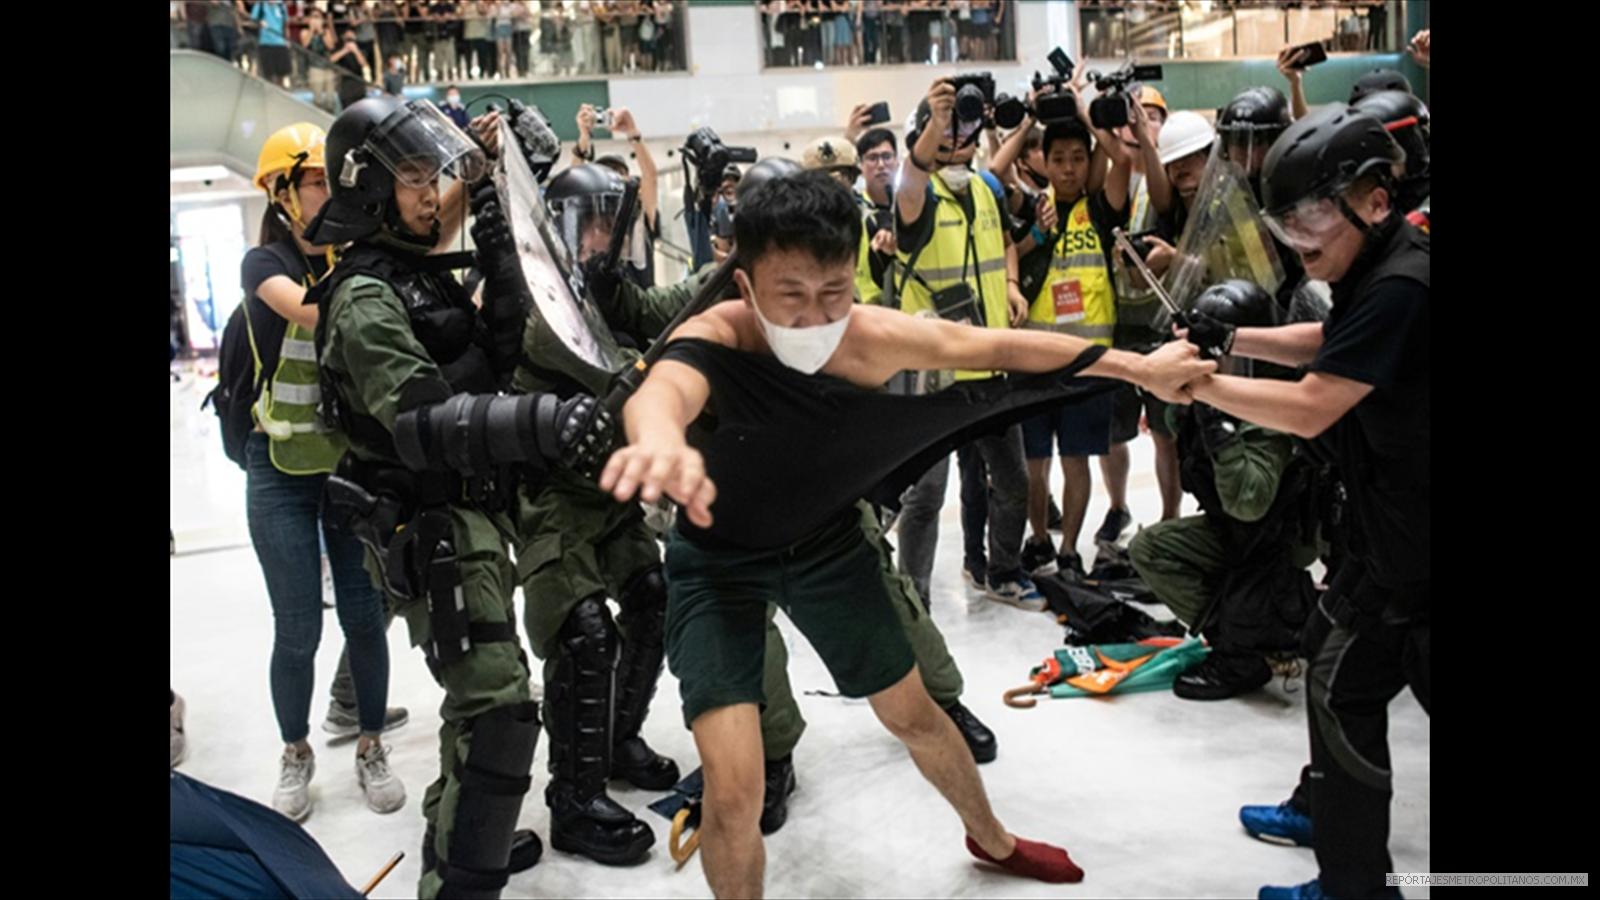 CHOQUES EN HONG KONG POR LEY DE EXTRADICCION A CHINA 